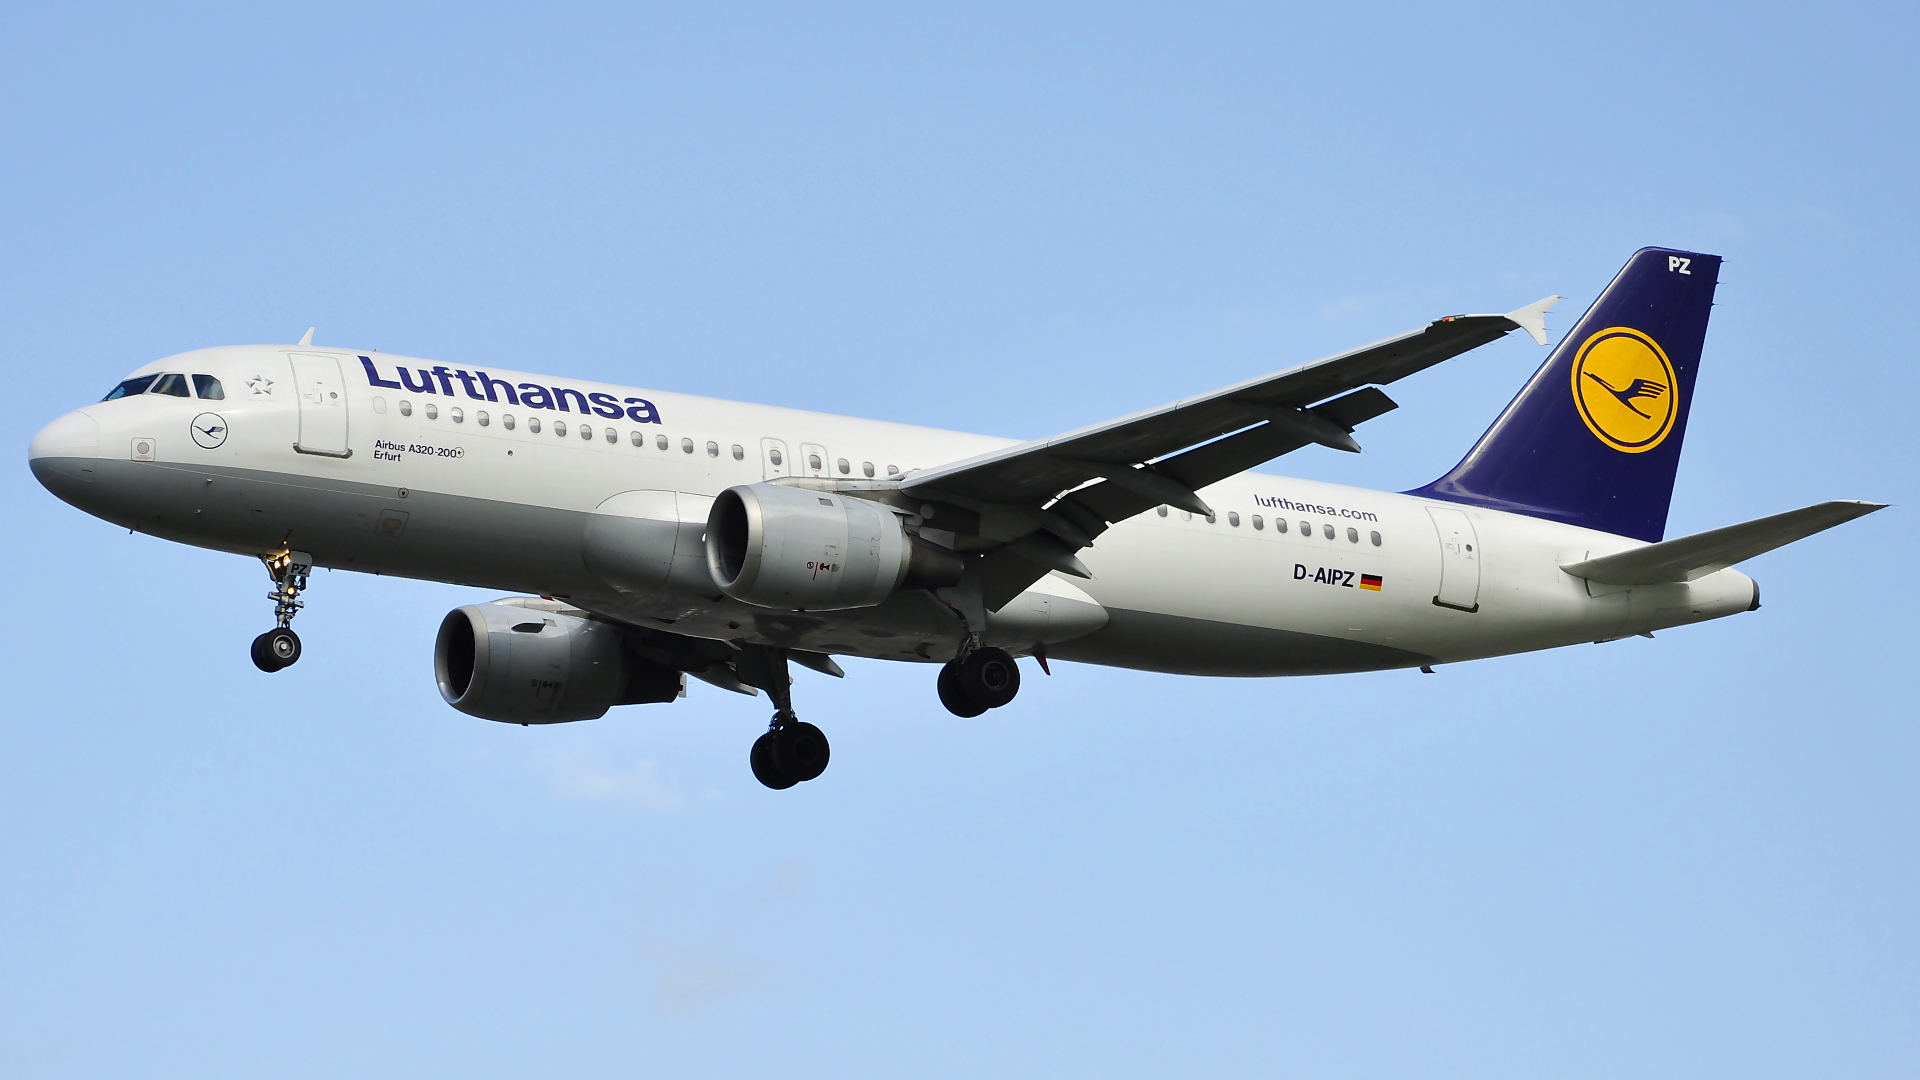 D-AIPZ ✈ Lufthansa Airbus 320-211 @ London-Heathrow